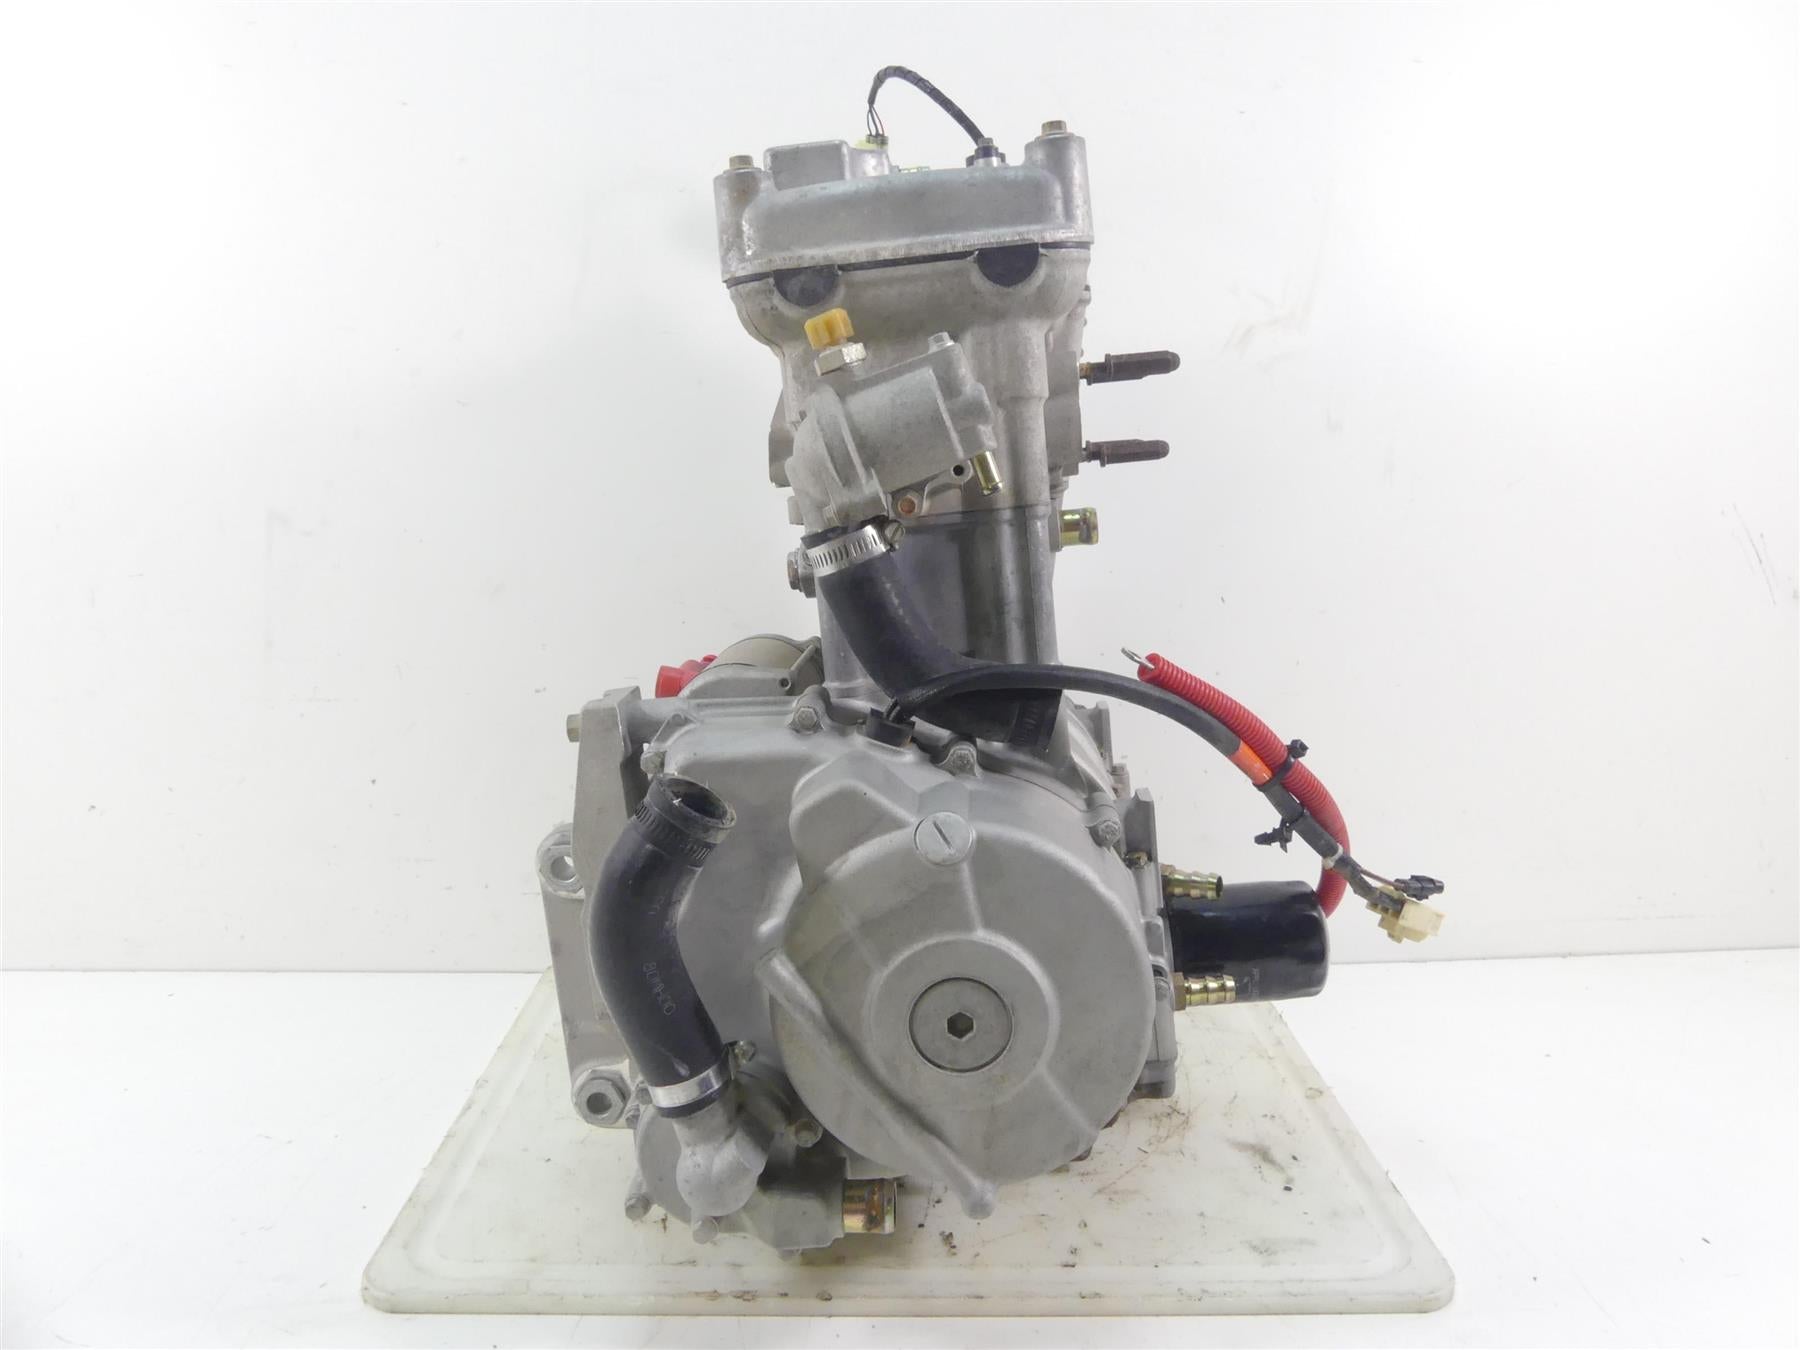 2015 Arctic Wild Cat 700 Sport LTD Running Engine Motor 542miles